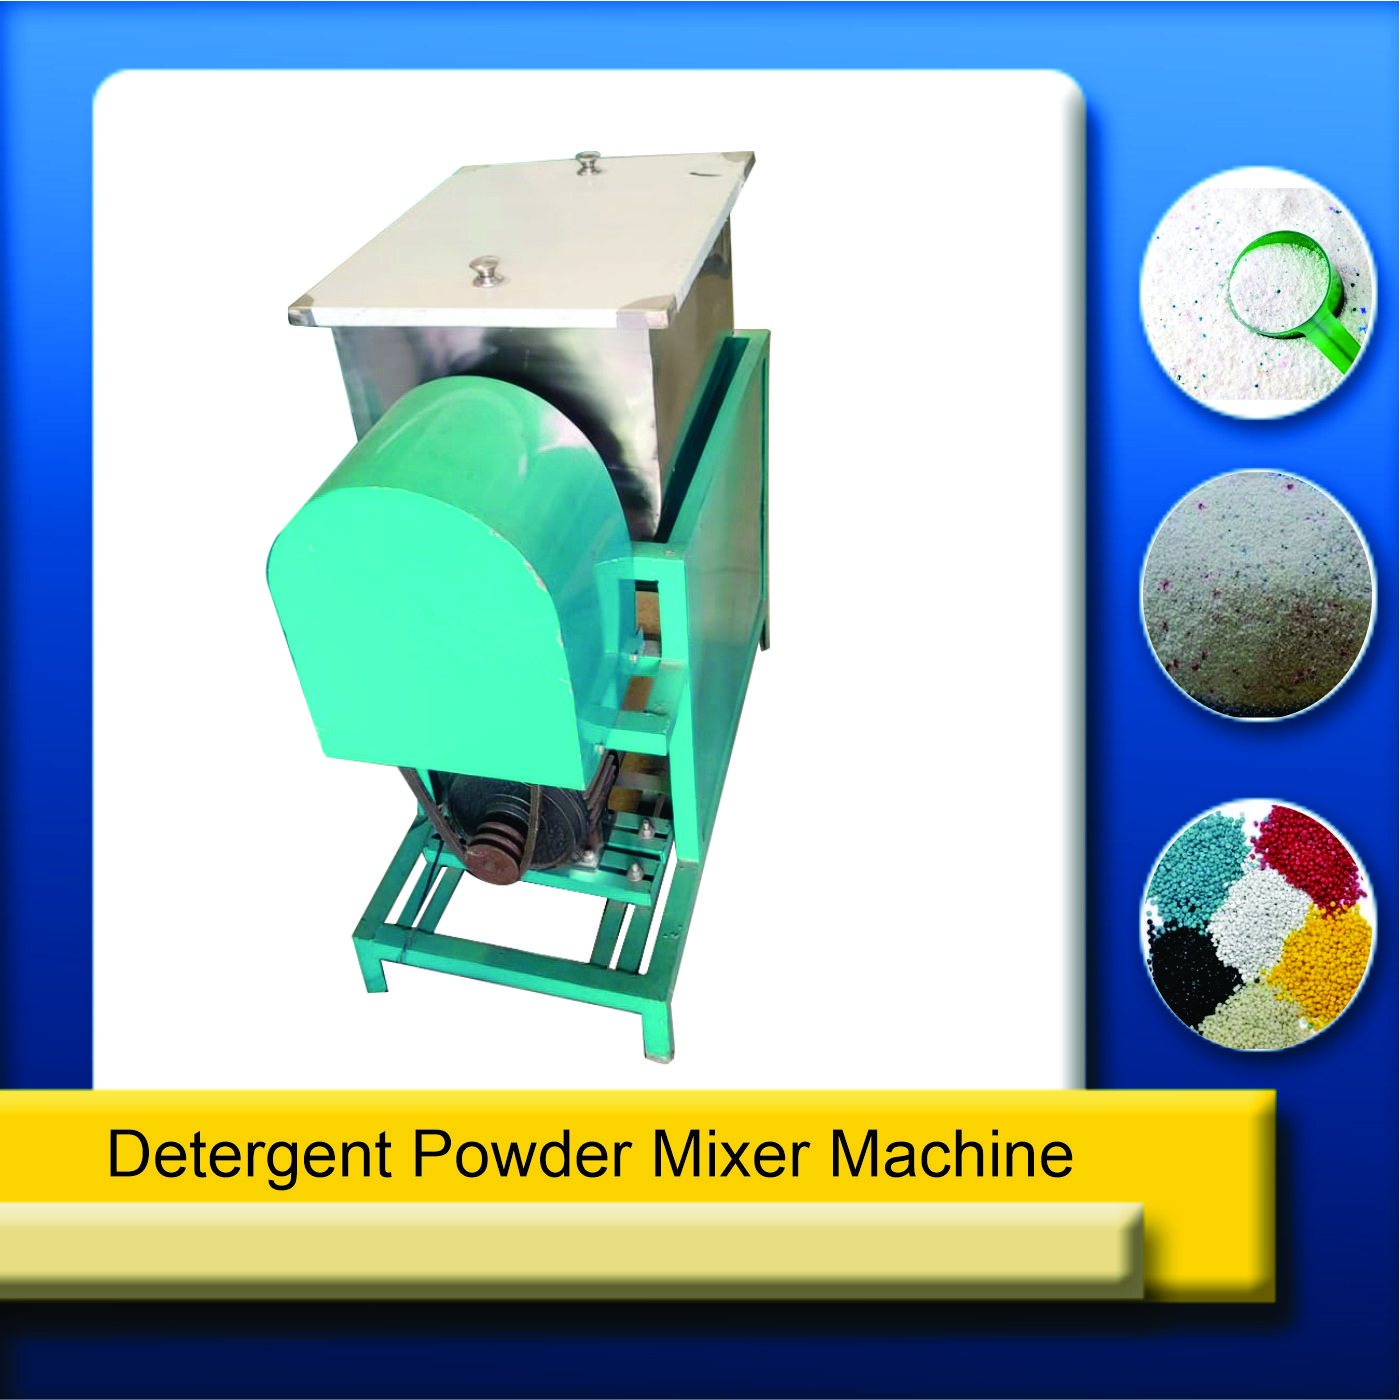 detergent powder mixture machine